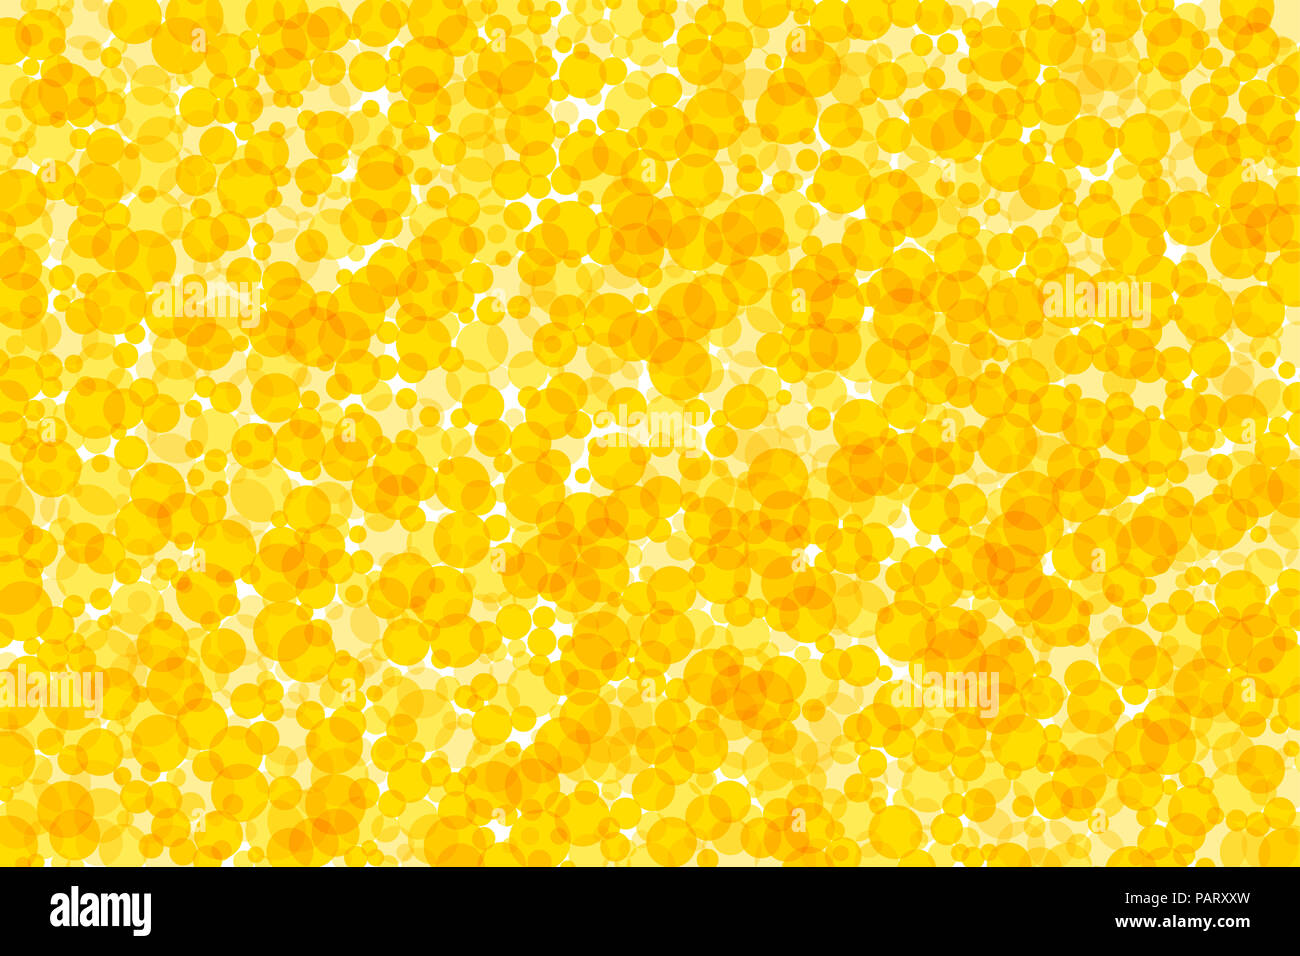 Hintergrund Aus gelb und orange Punkte. Durchscheinende Flecken bilden einen hellen Bereich. Golden, sonnigen und strahlenden Dekor. Abbildung. Stockfoto